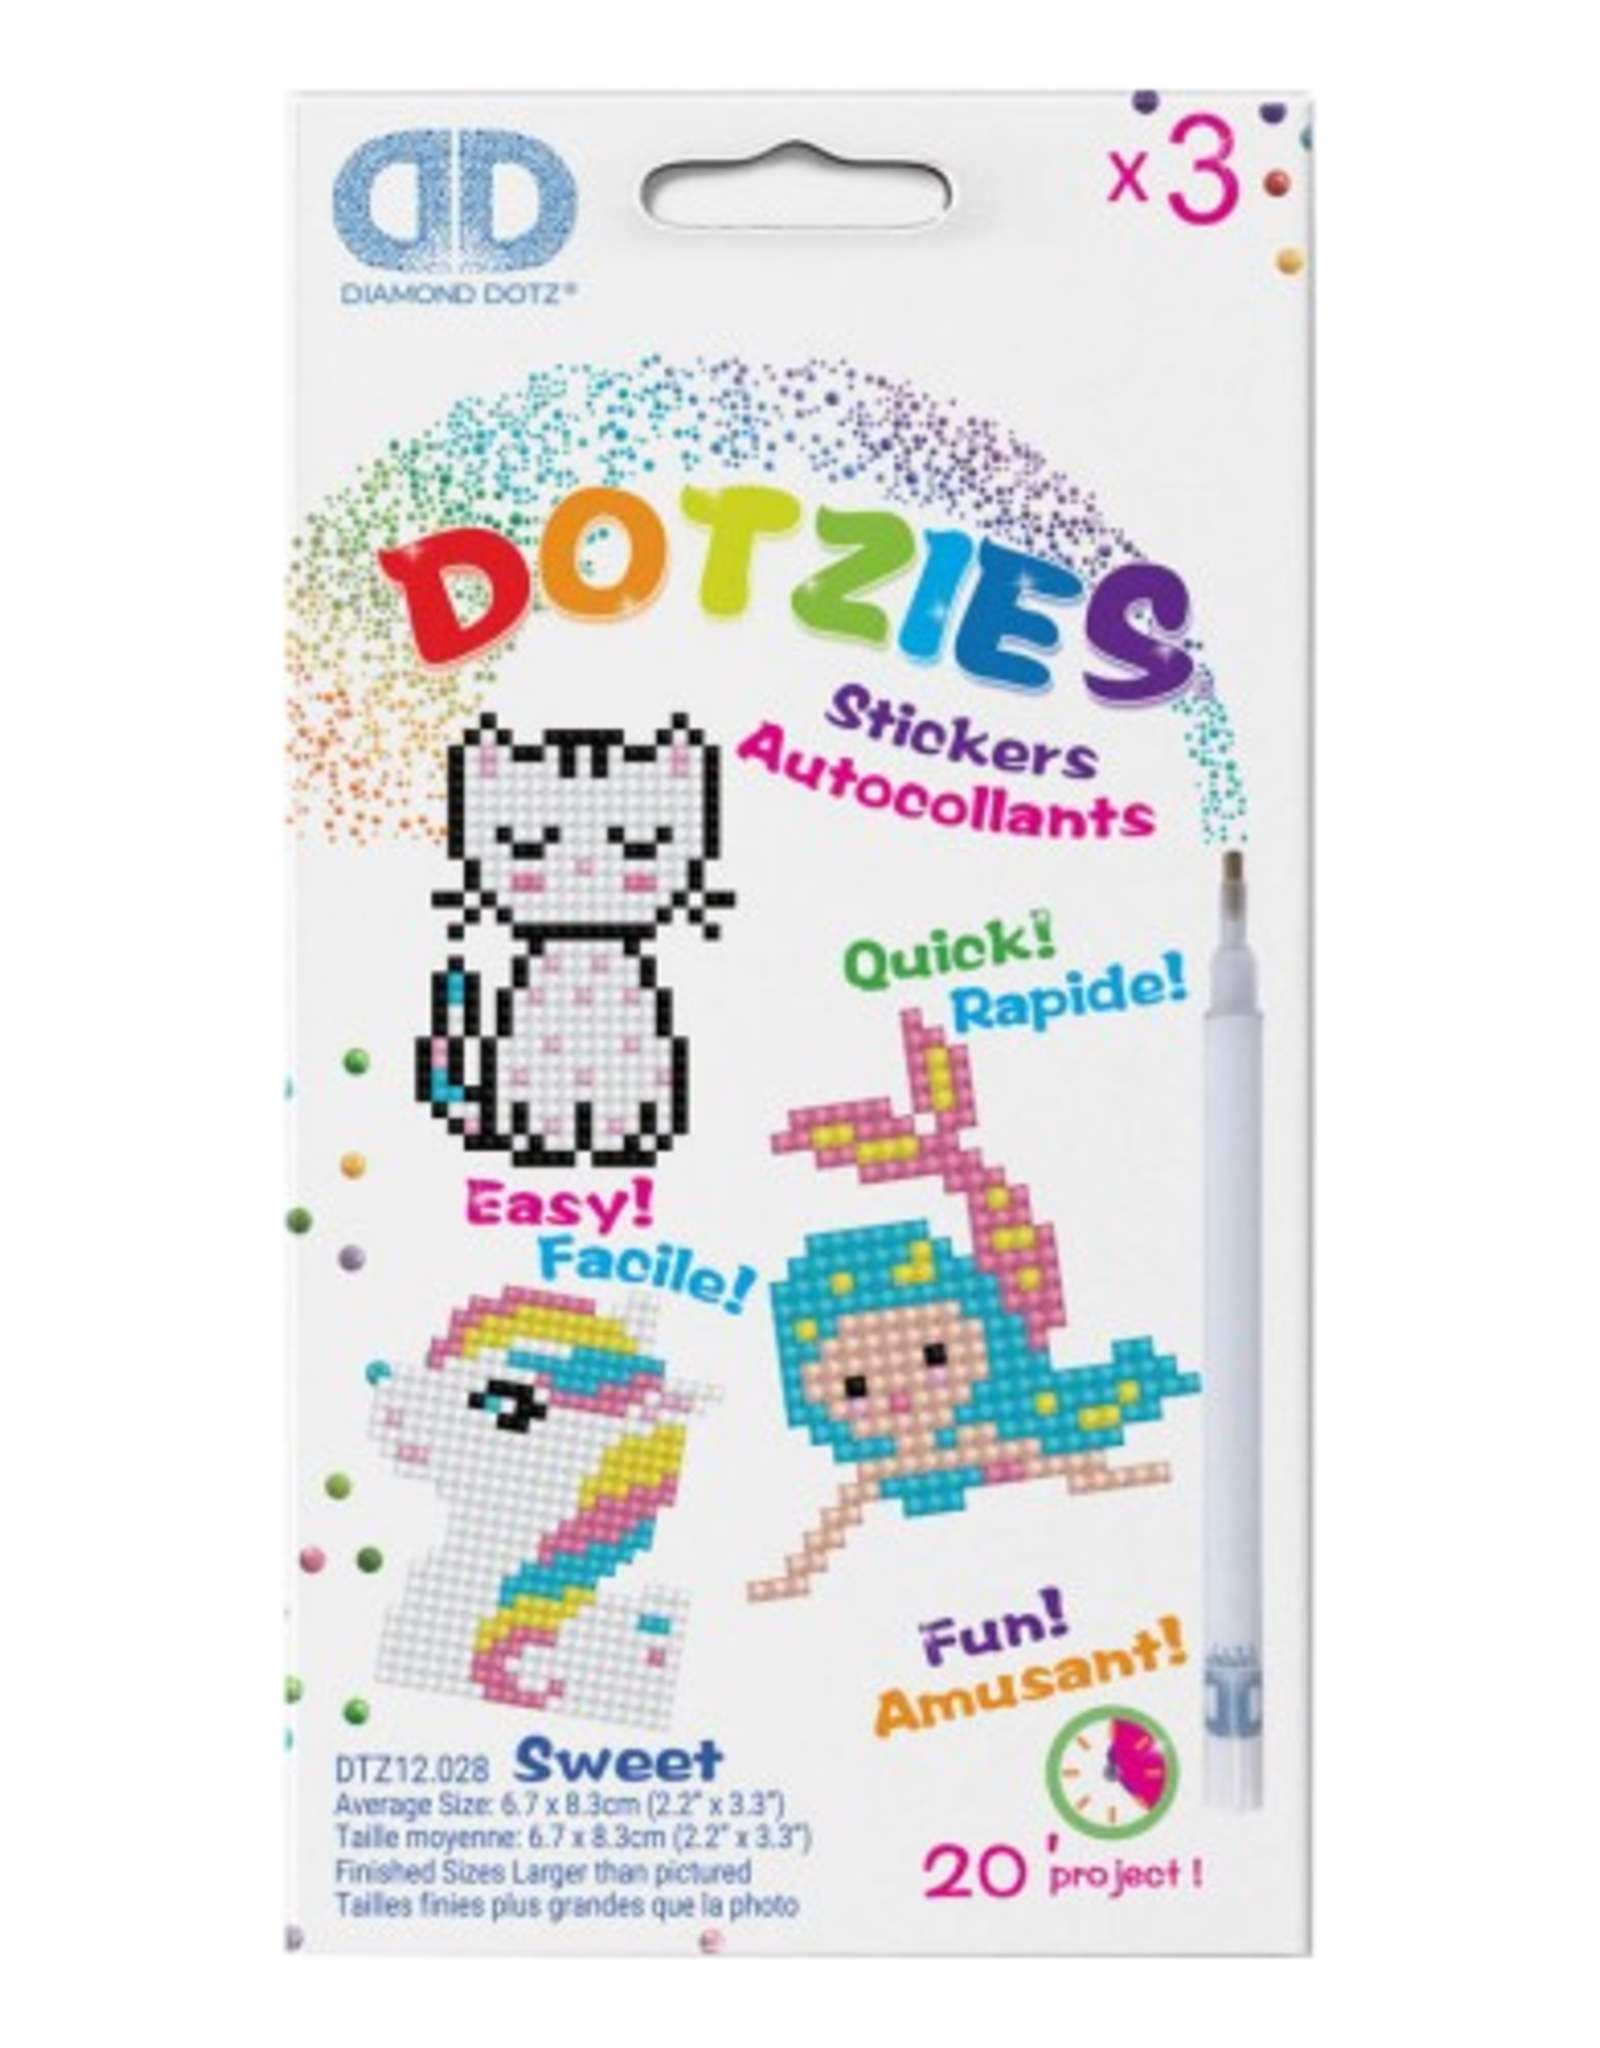 Diamond Dotz Diamond Dotz - Sweet Kitten Mermaid Pony DOTZIES Stickers